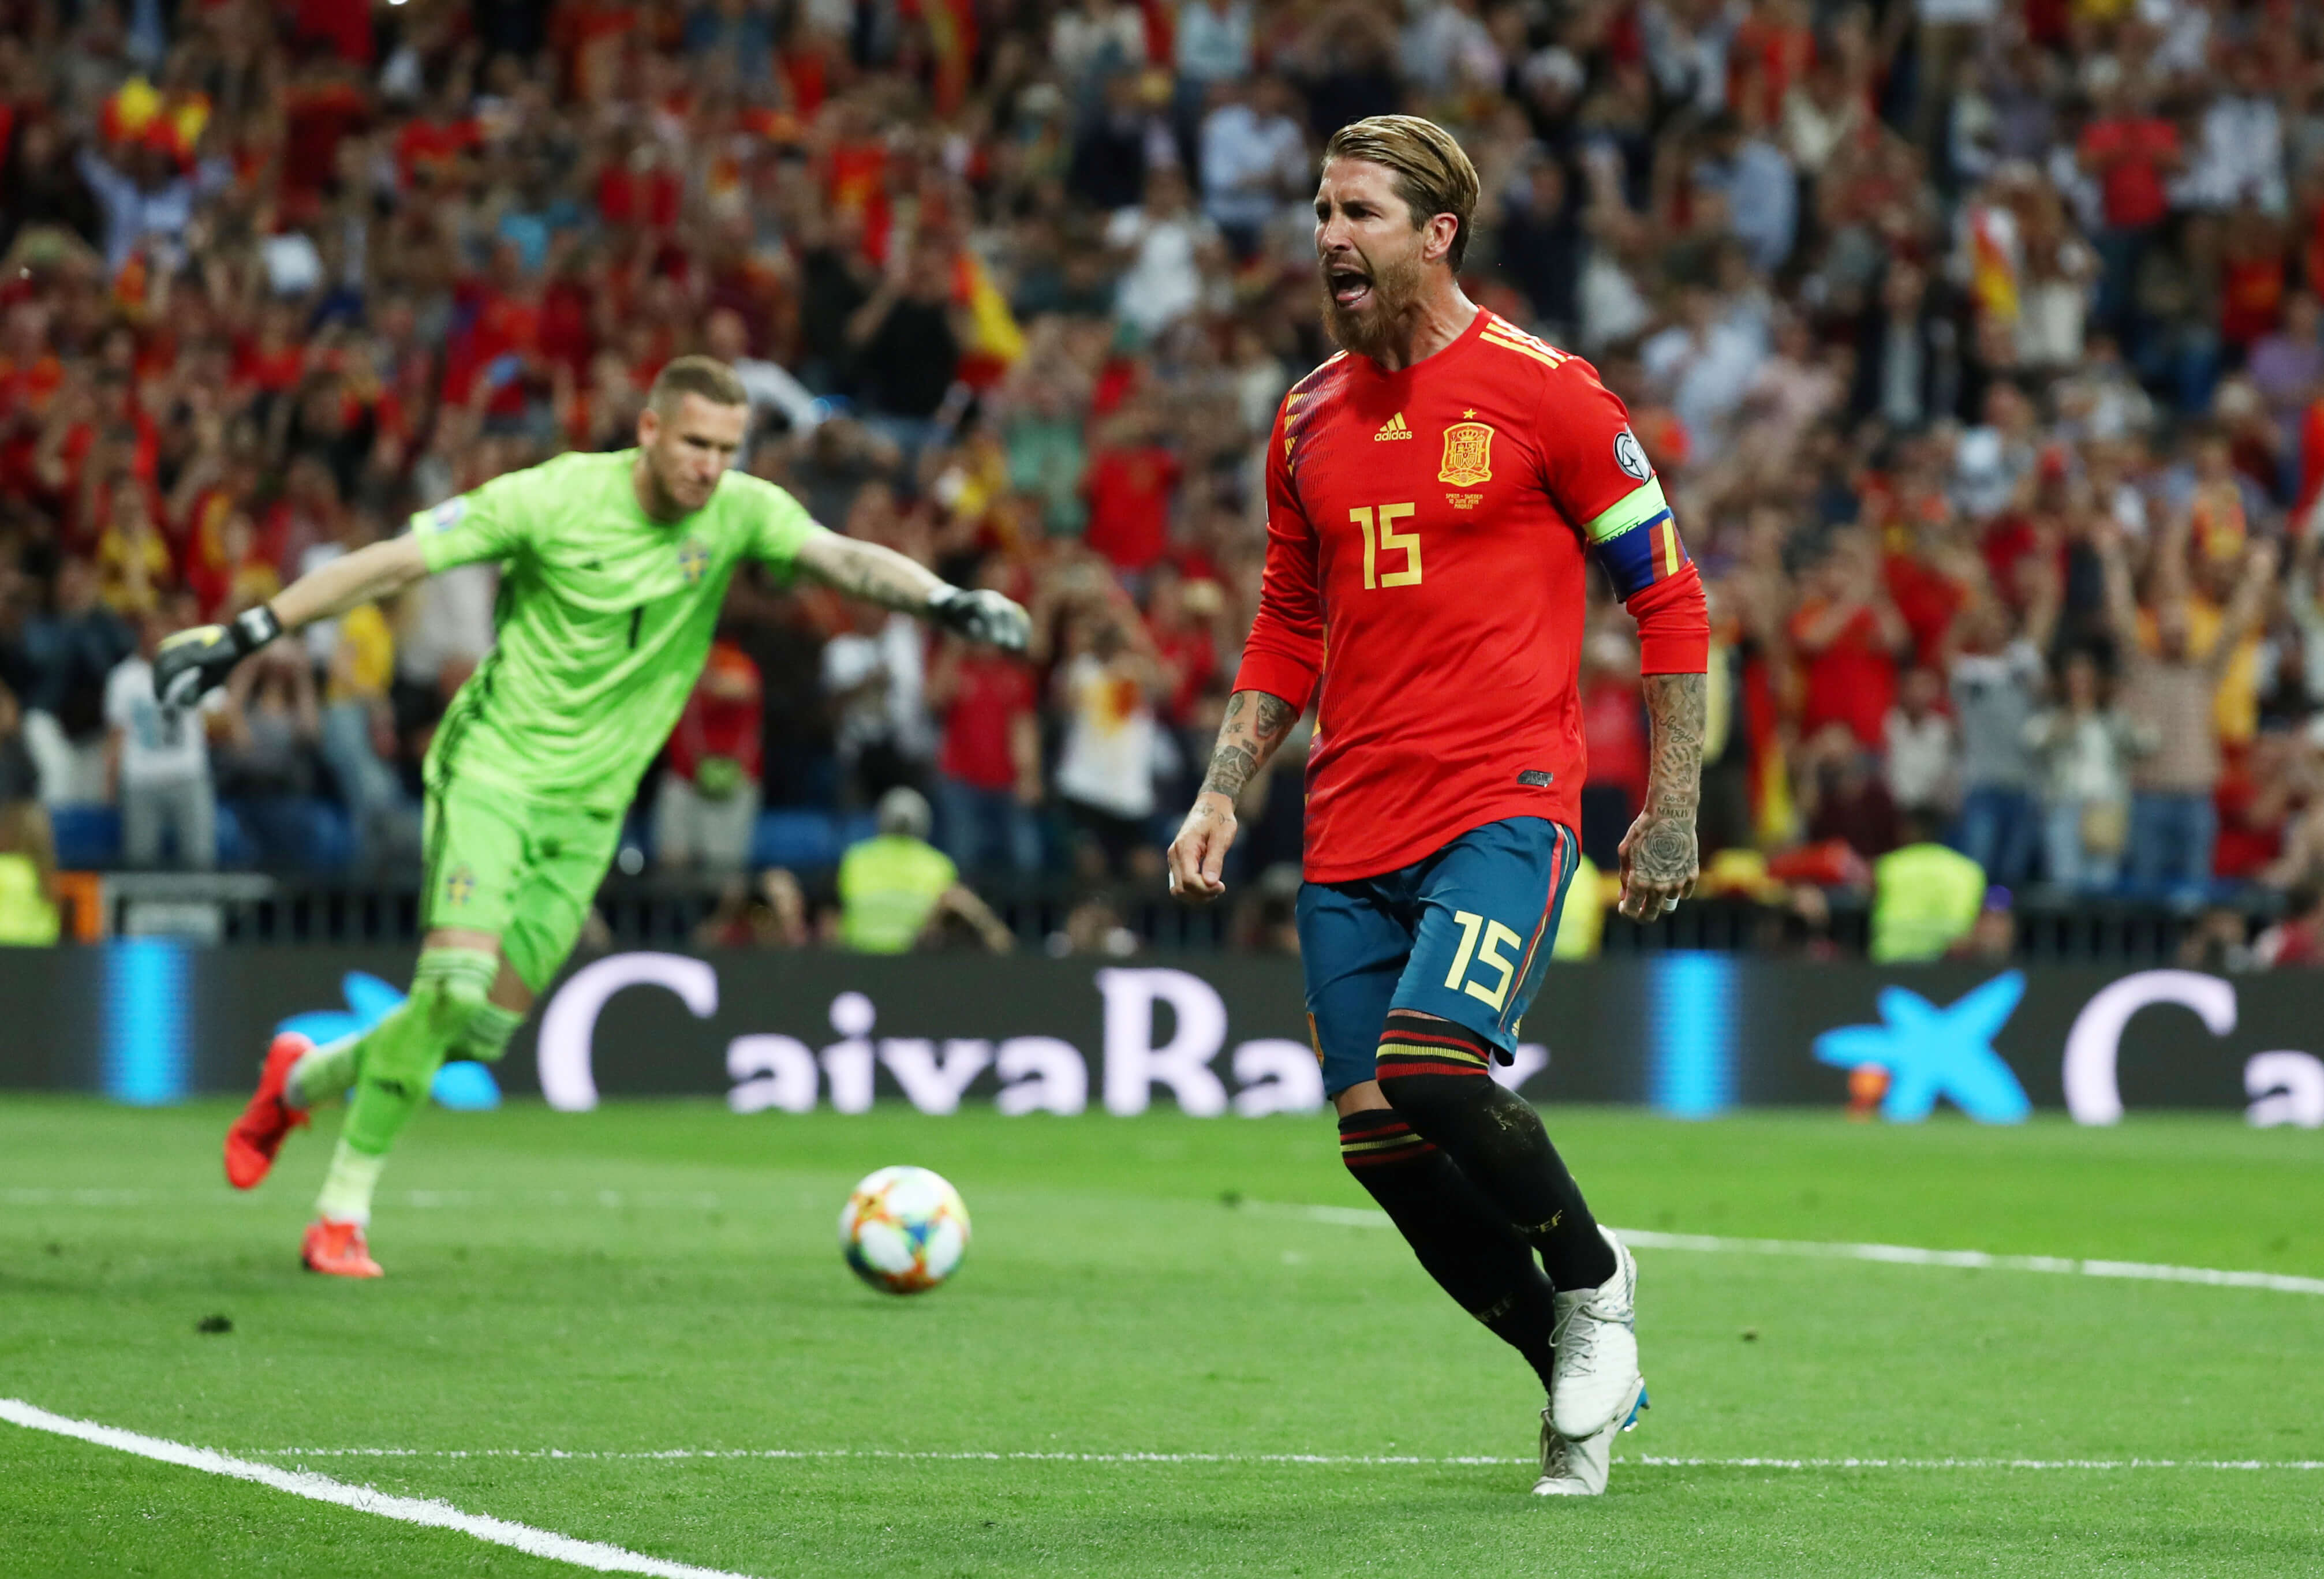 Προκριματικά Euro 2020: Η Ισπανία “λύγισε” τον εκπληκτικό Όλσεν